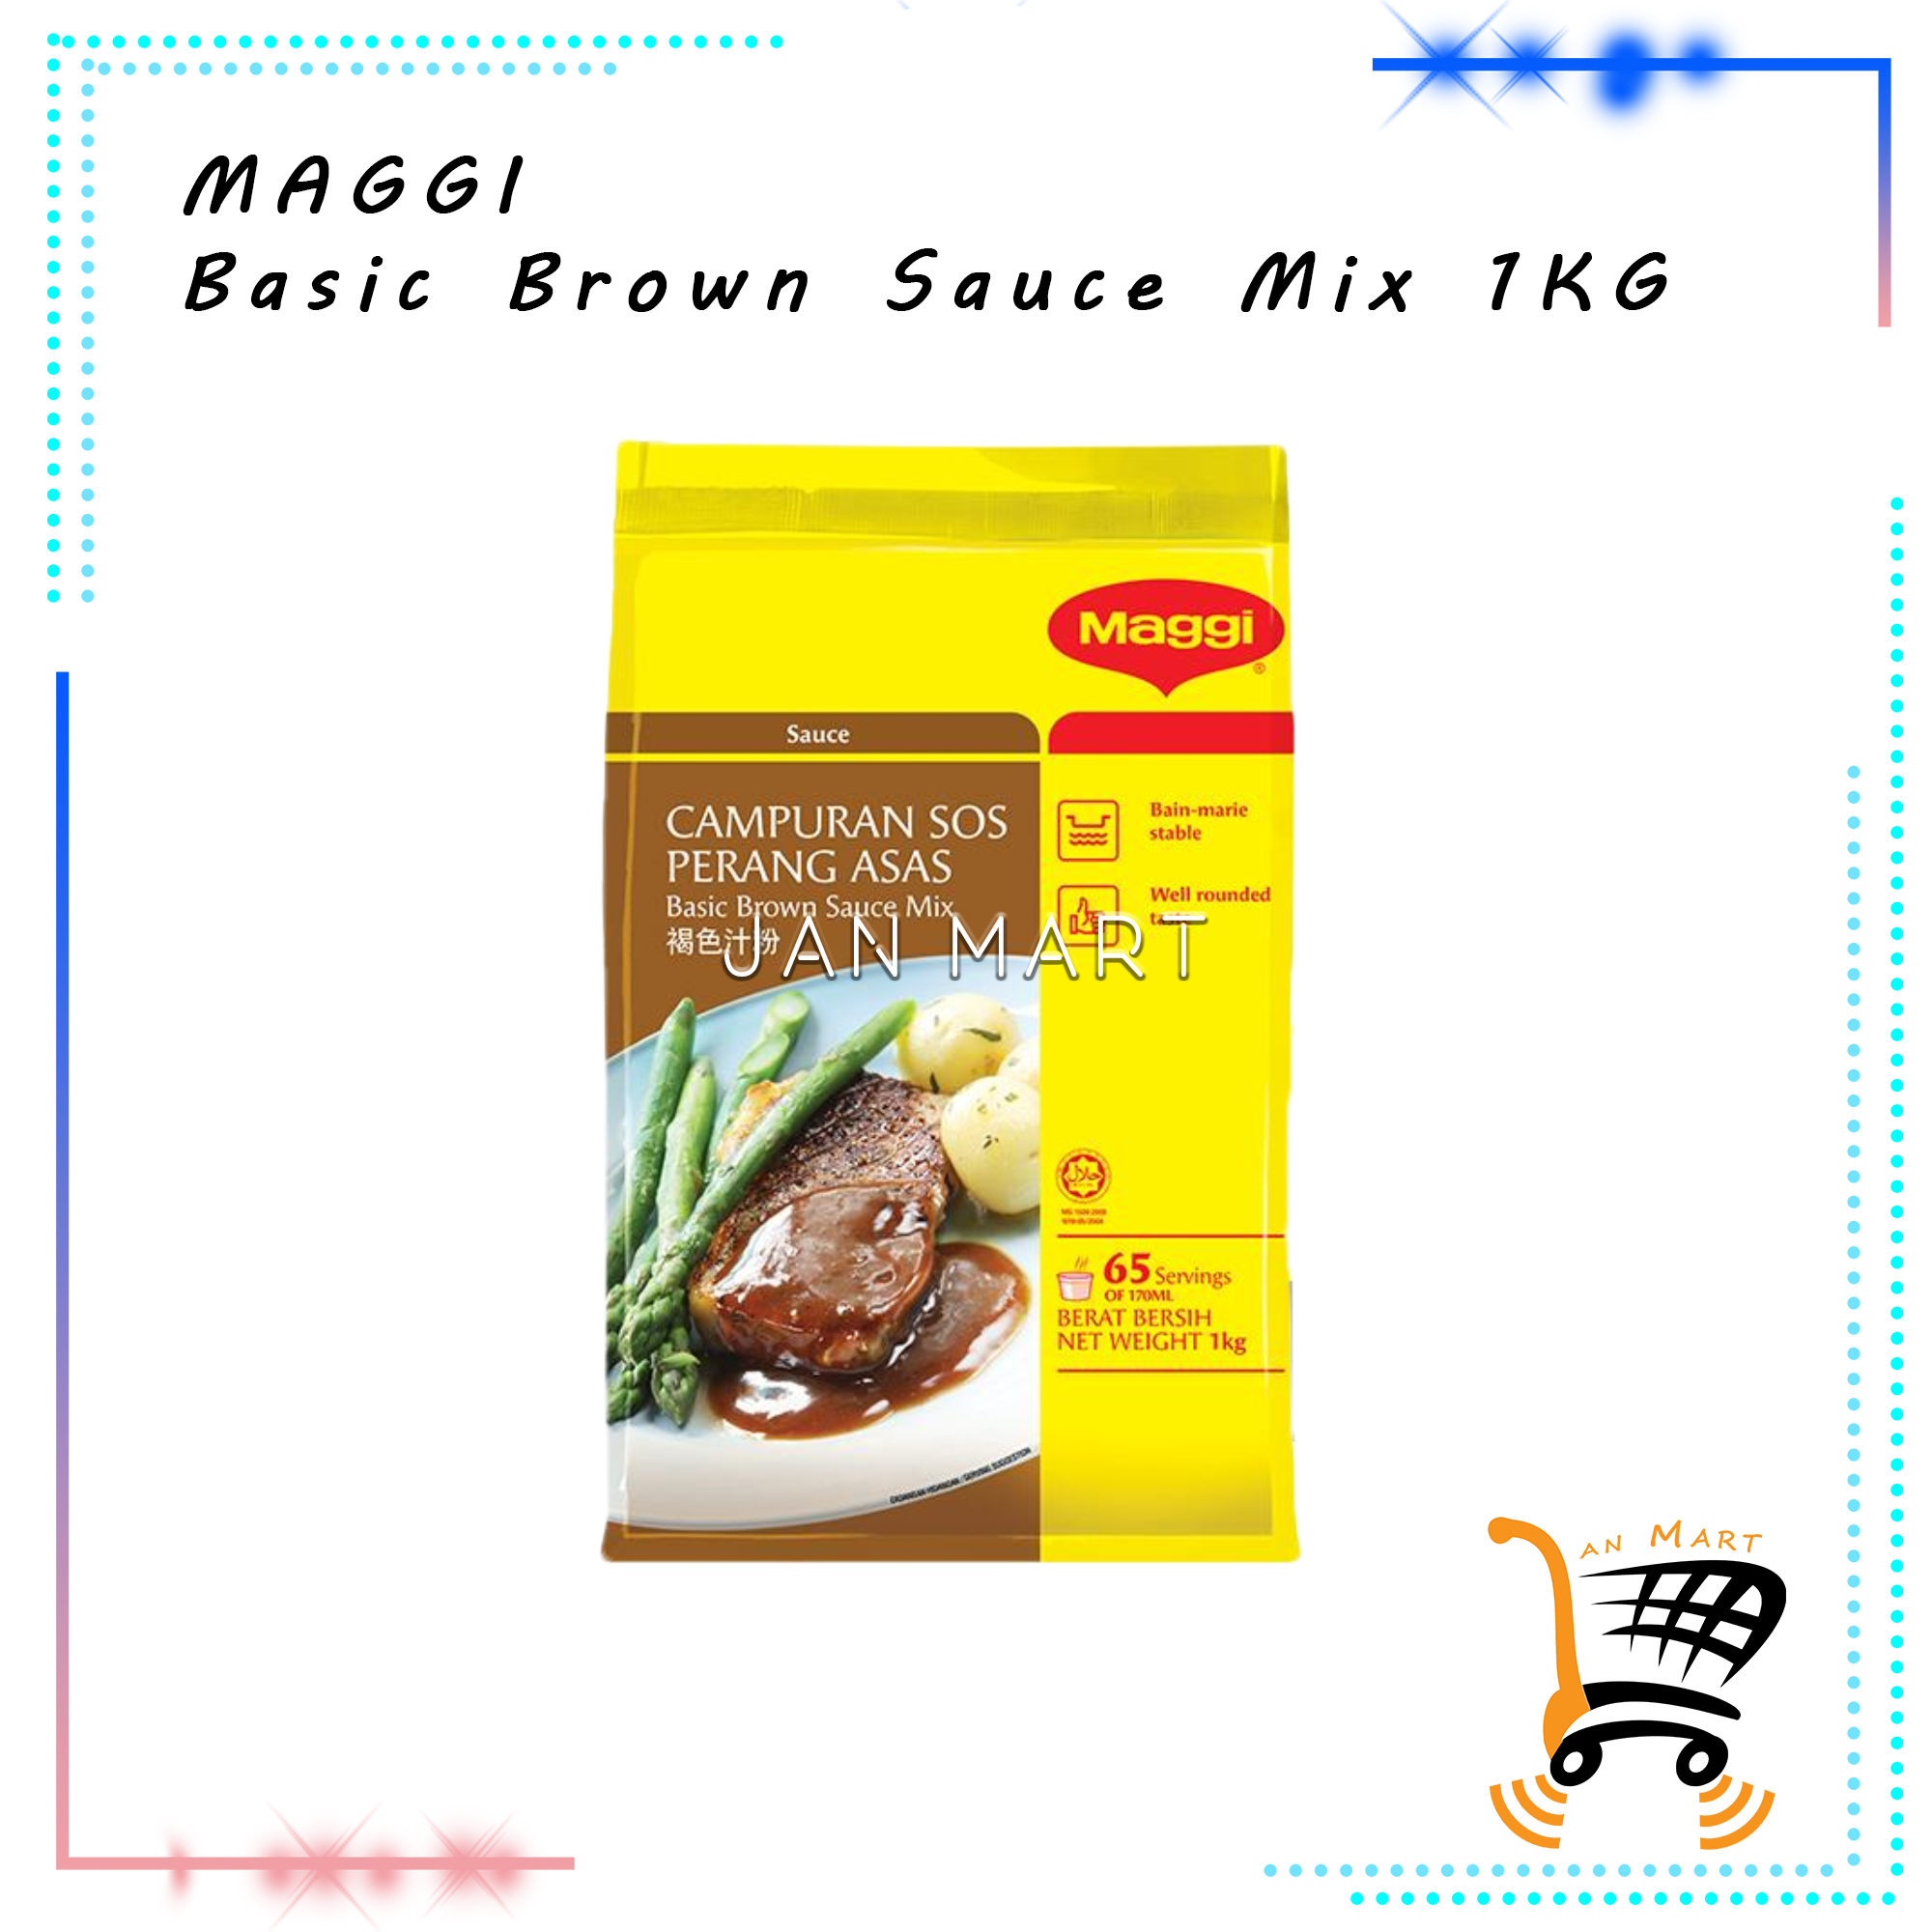 MAGGI Basic Brown Sauce Mix 1KG